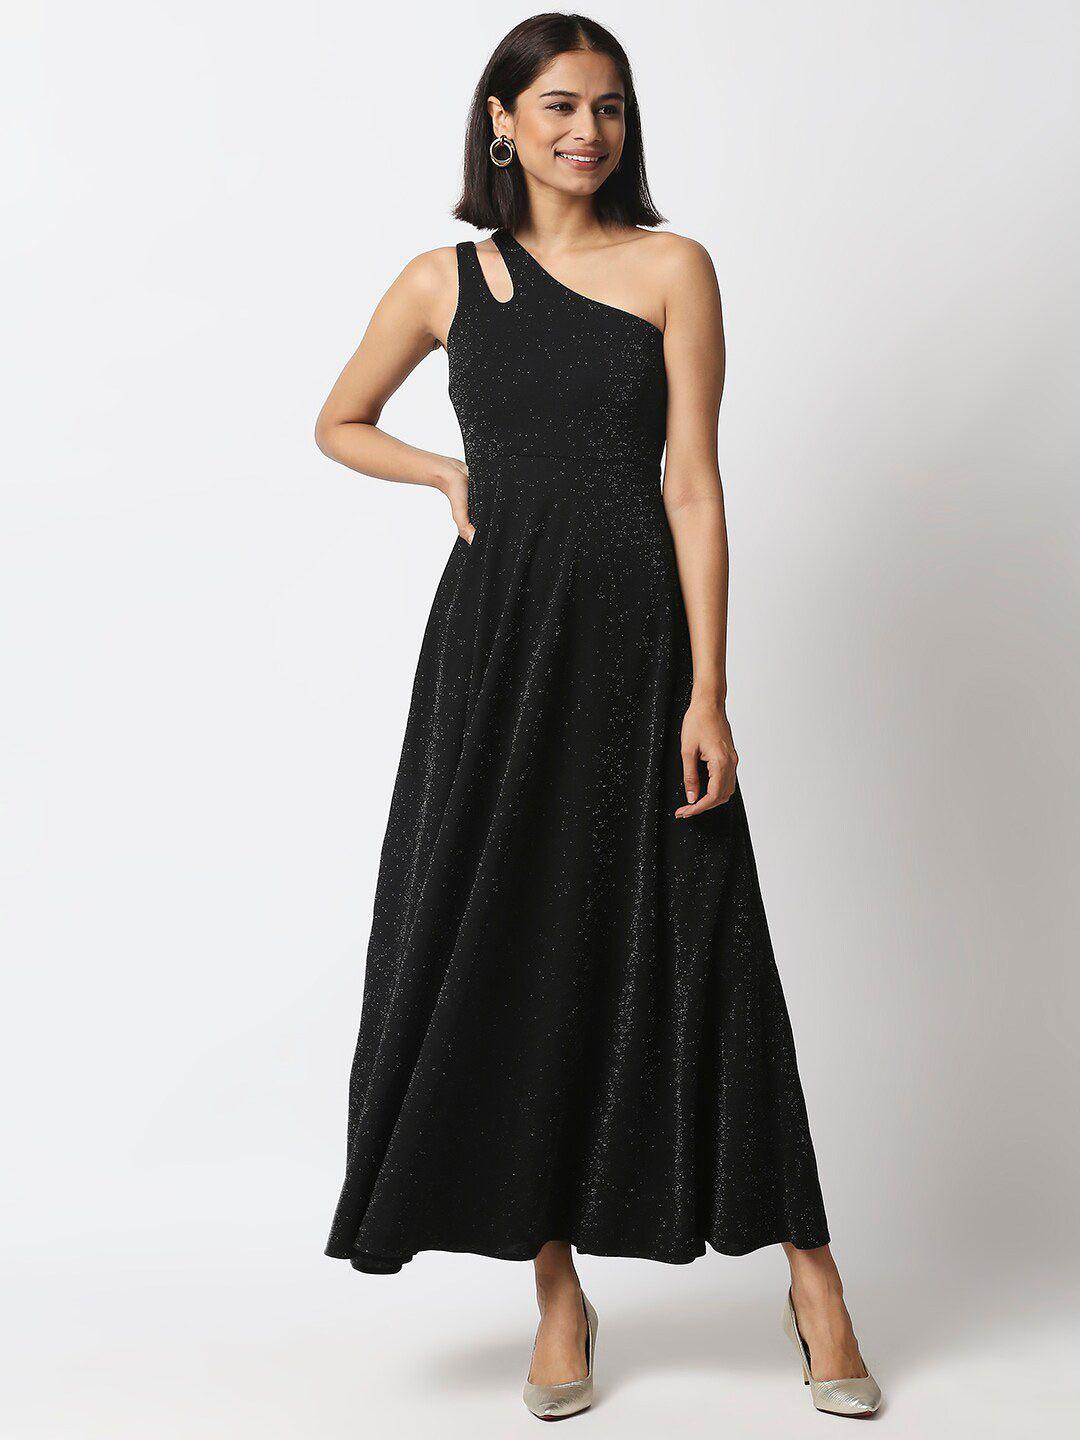 20dresses black embellished maxi dress